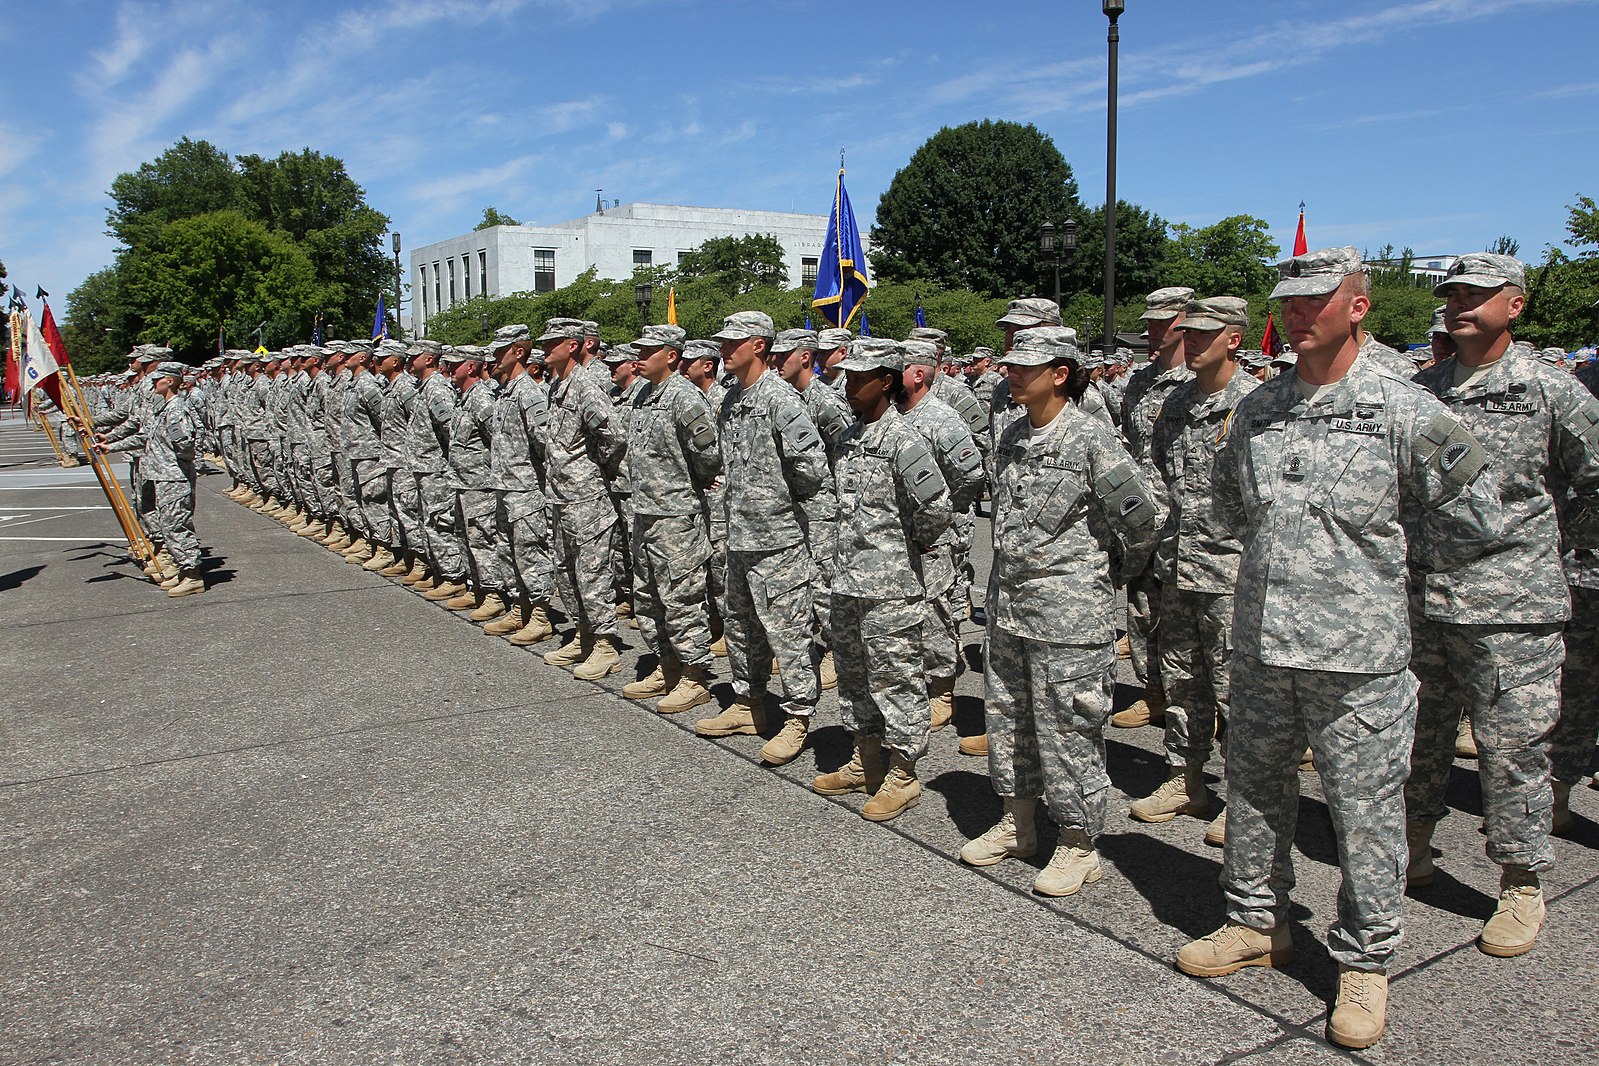 South Carolina National Guard member practices the balancing act